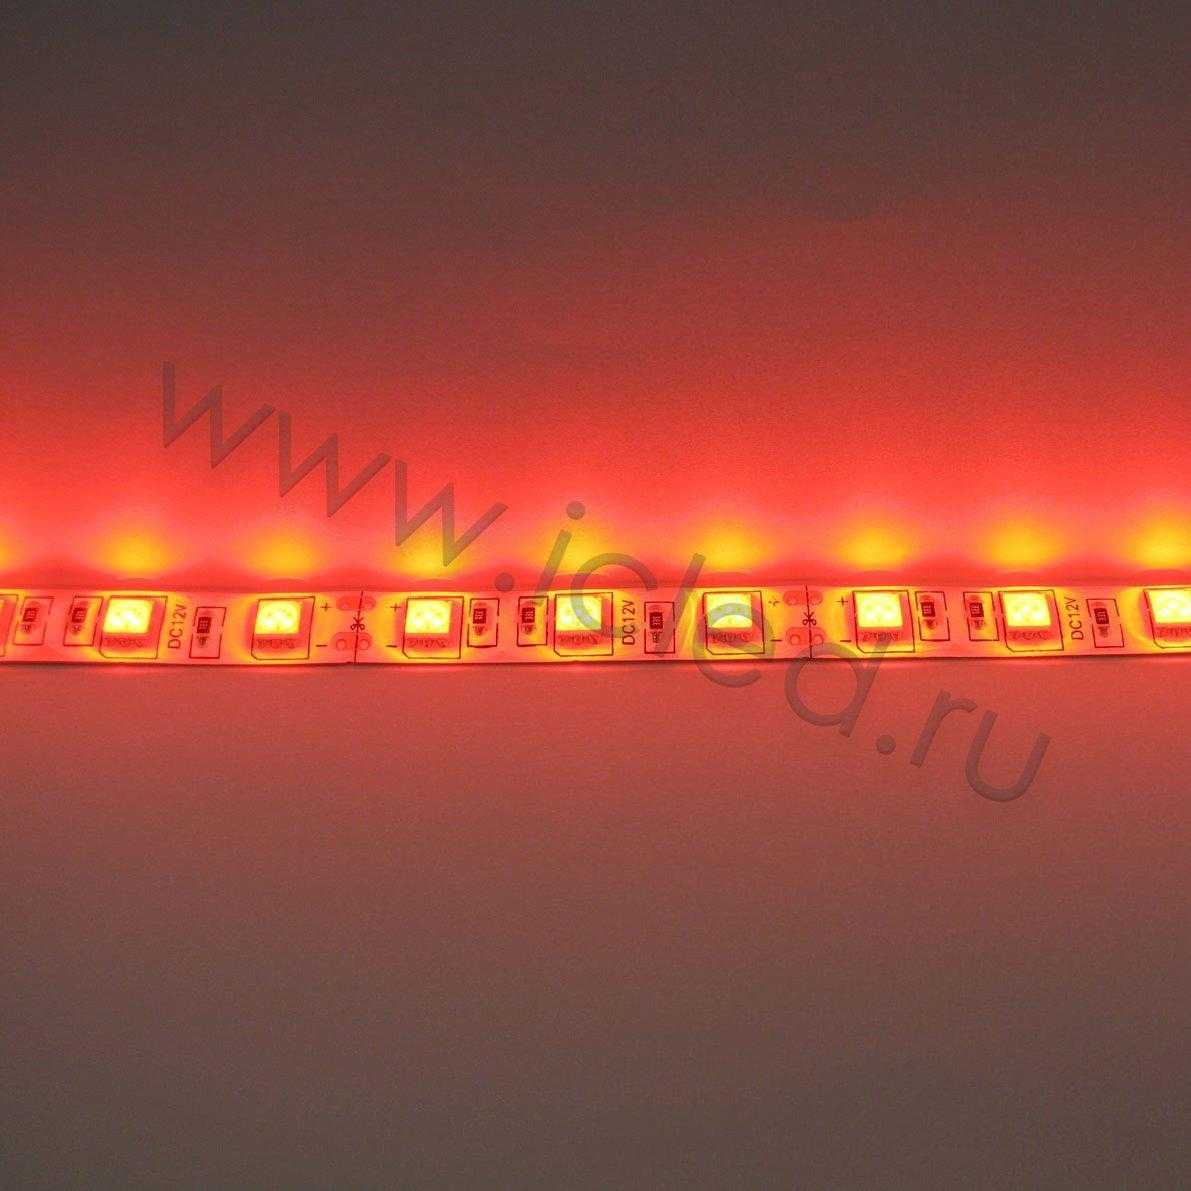 Влагозащищенные светодиодные ленты Светодиодная лента Standart class, 5050, 60led/m, Red, 12V, IP65 Icled